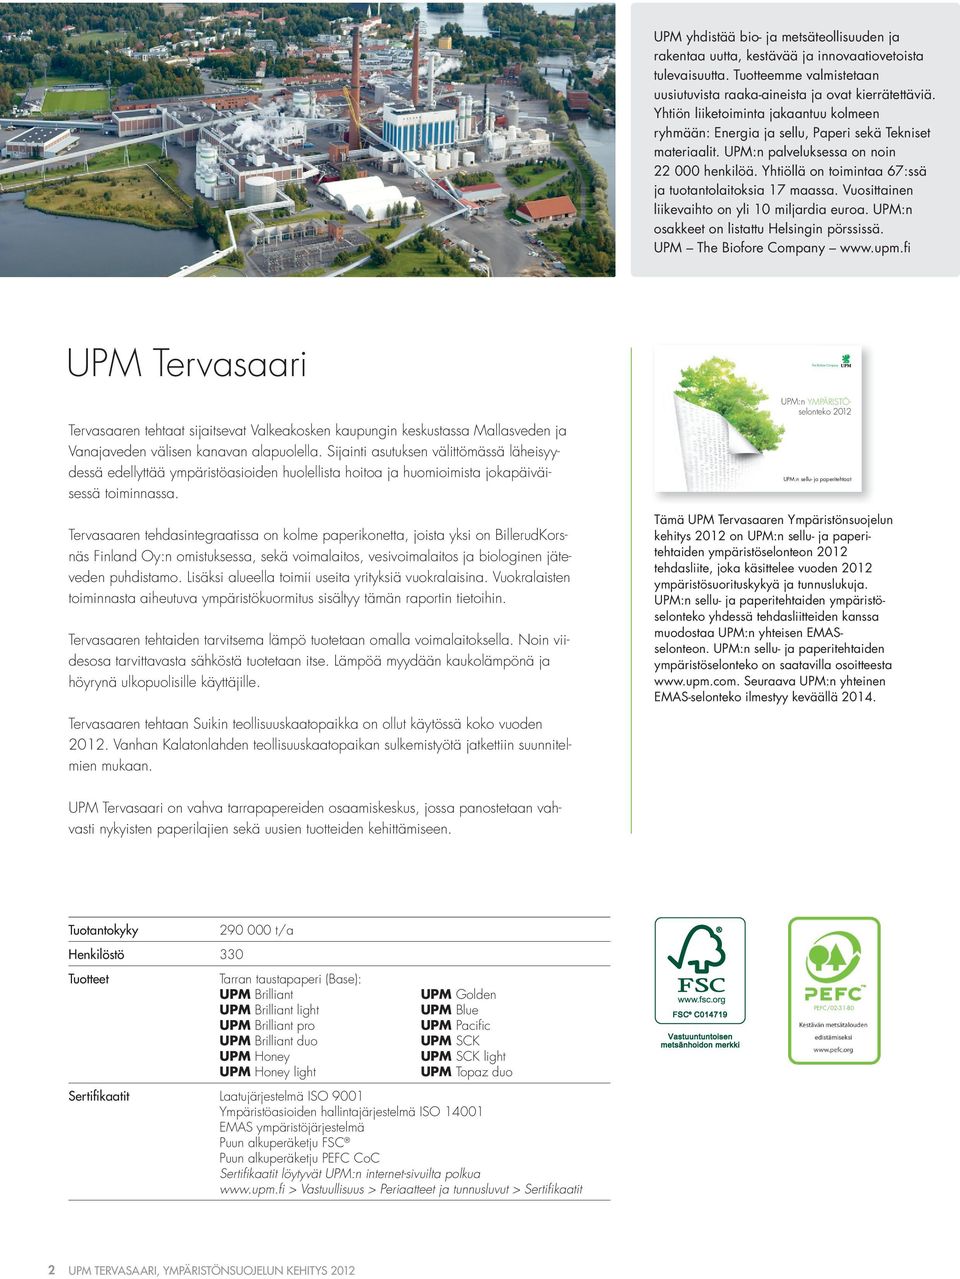 Yhtiöllä on toimintaa 67:ssä ja tuotantolaitoksia 17 maassa. Vuosittainen liikevaihto on yli miljardia euroa. UPM:n osakkeet on listattu Helsingin pörssissä. UPM The Biofore Company www.upm.